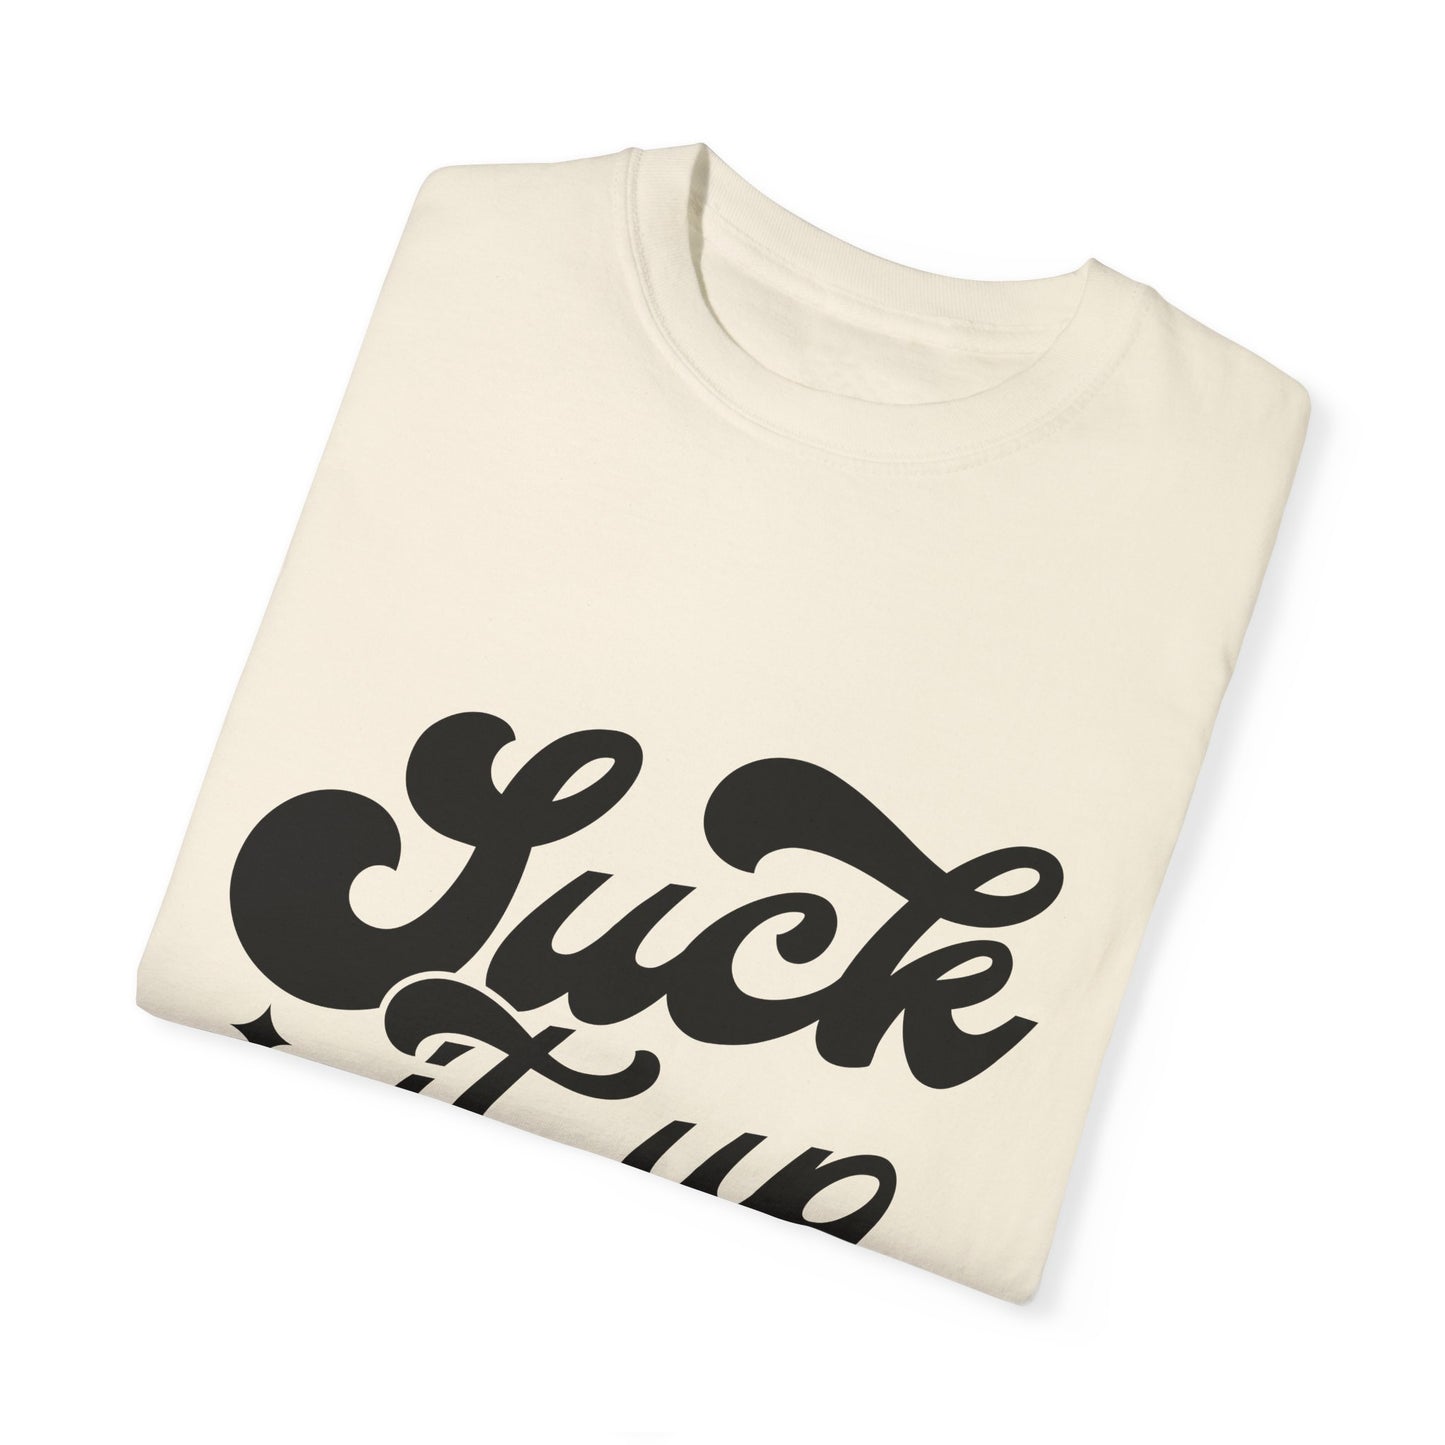 Suck it up buttercup - Unisex Garment-Dyed T-shirt